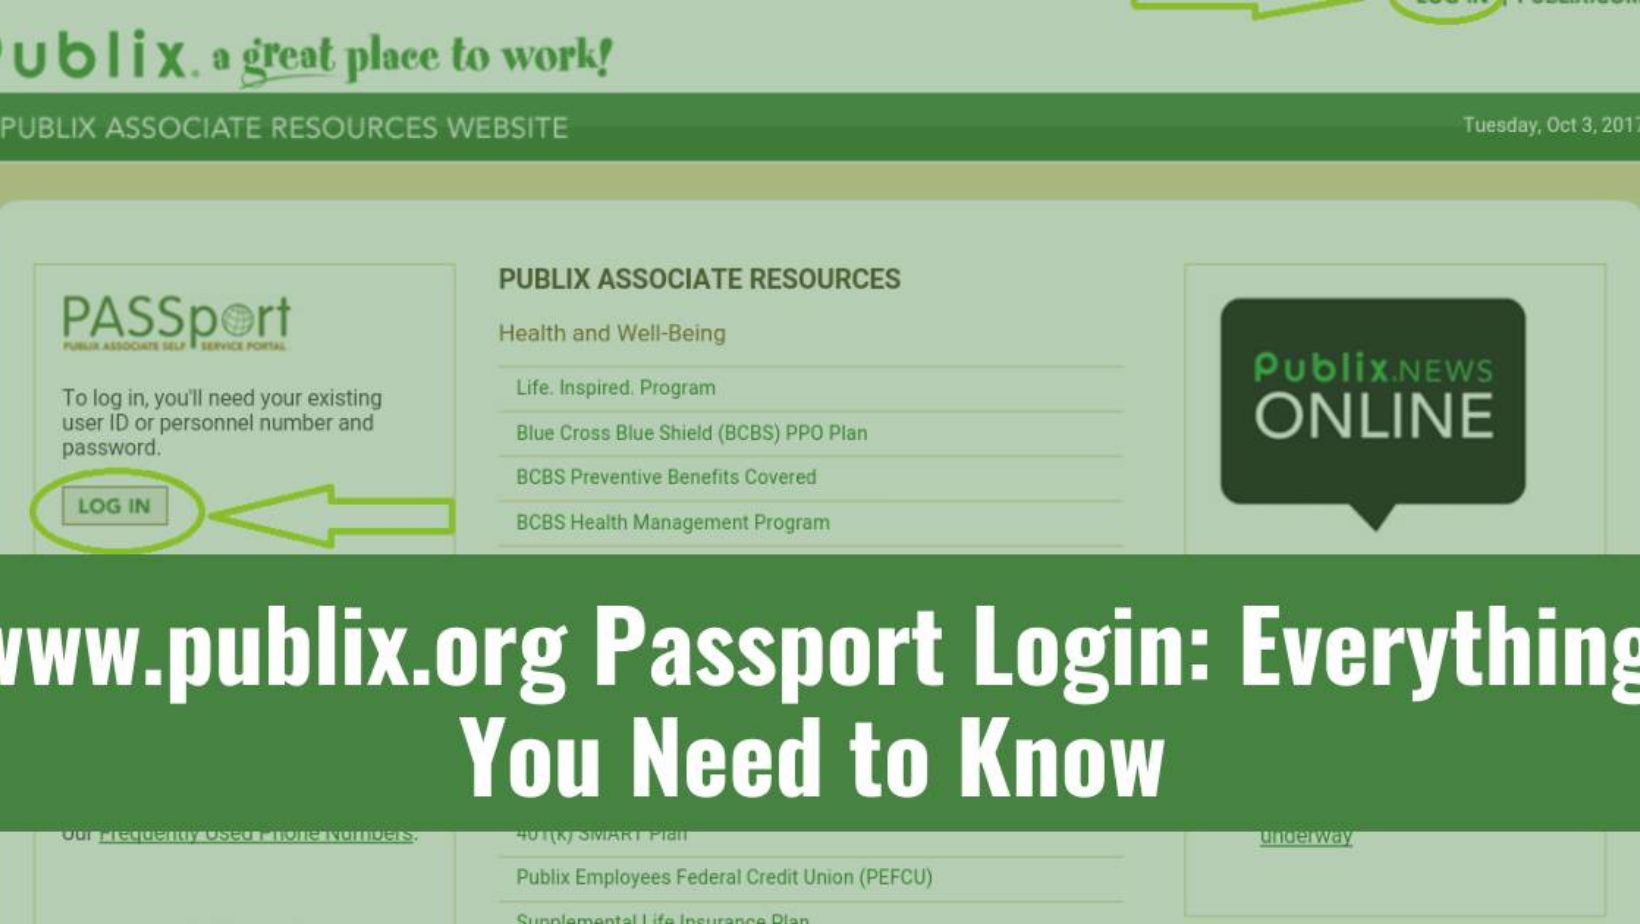 www.publix.org passport login